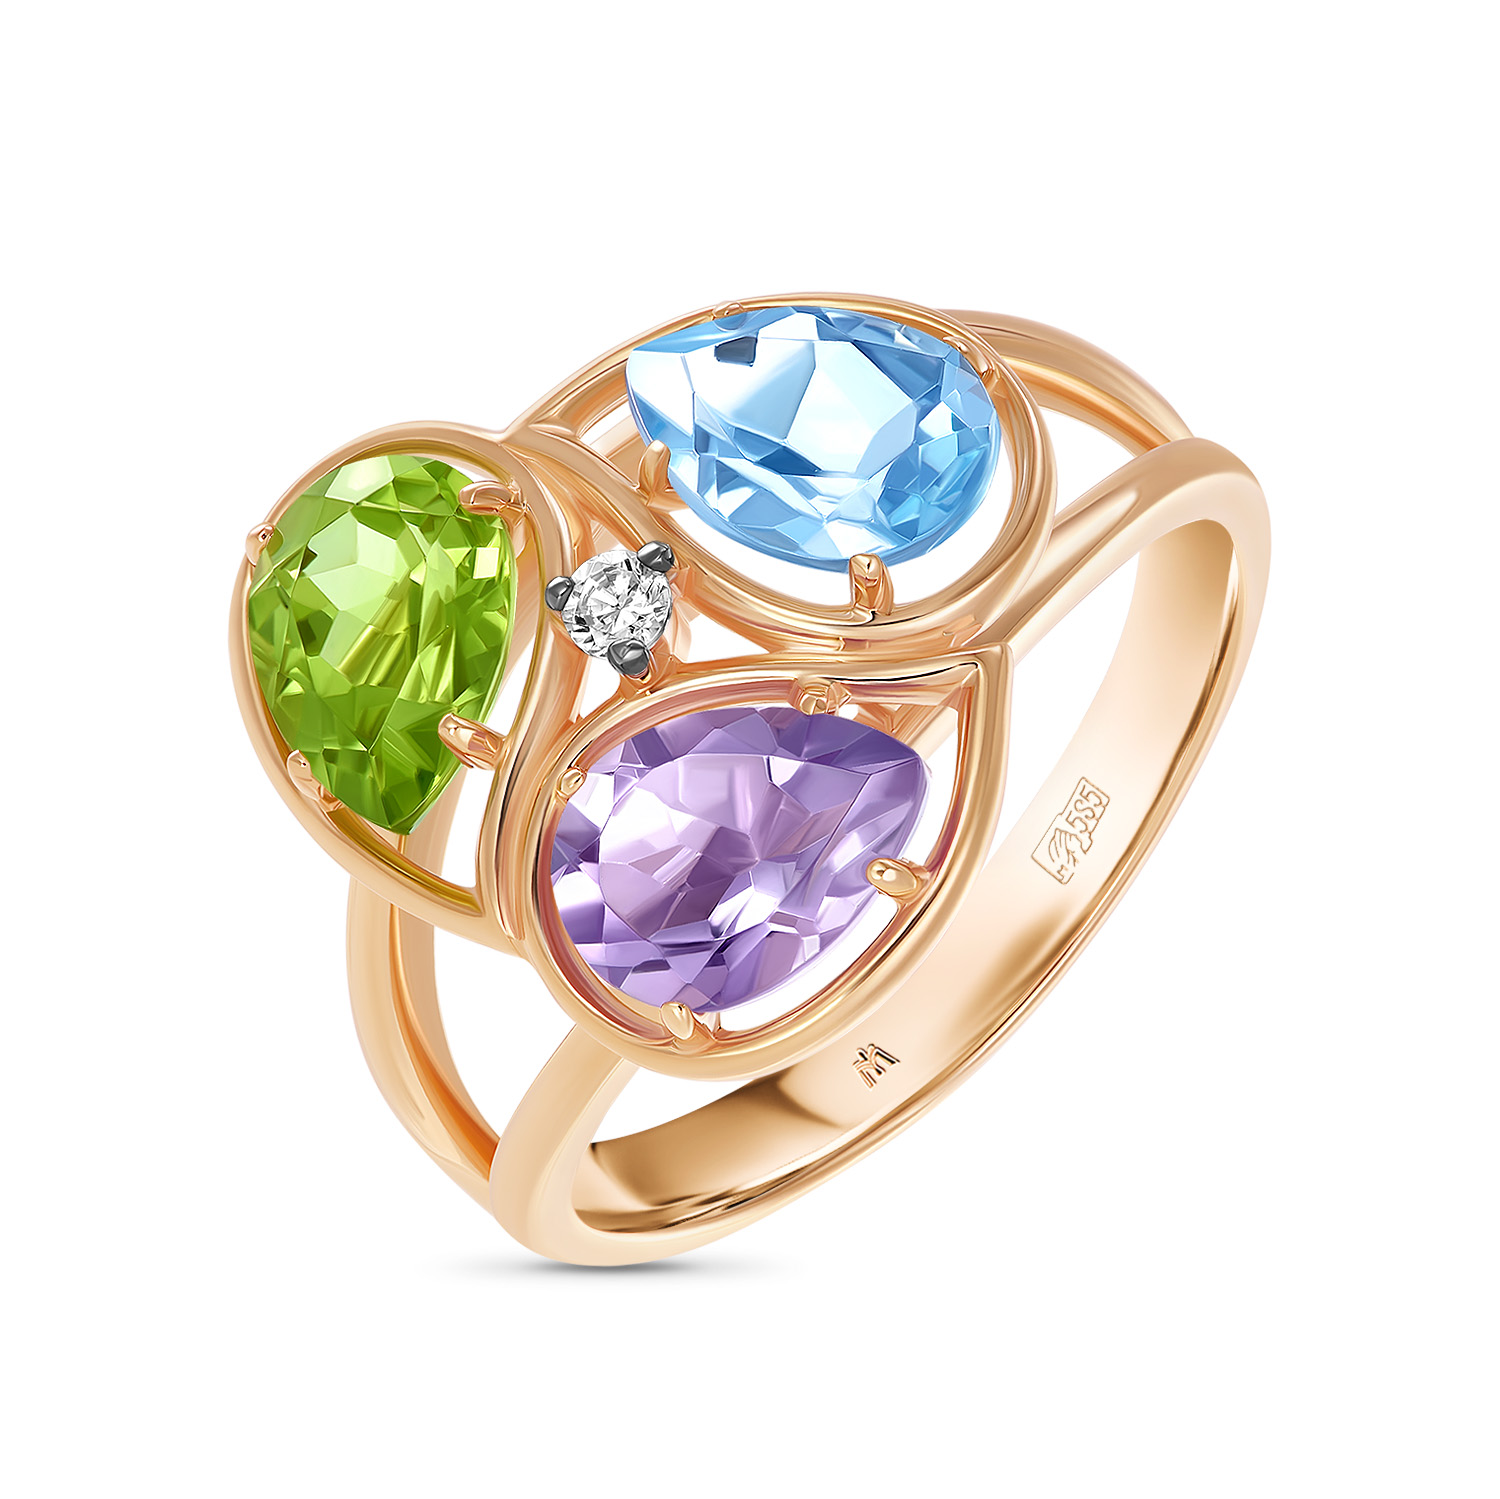 Кольца МЮЗ Золотое кольцо с аметистом, топазом, хризолитом и фианитом кольца мюз золотое кольцо с аметистом и топазом